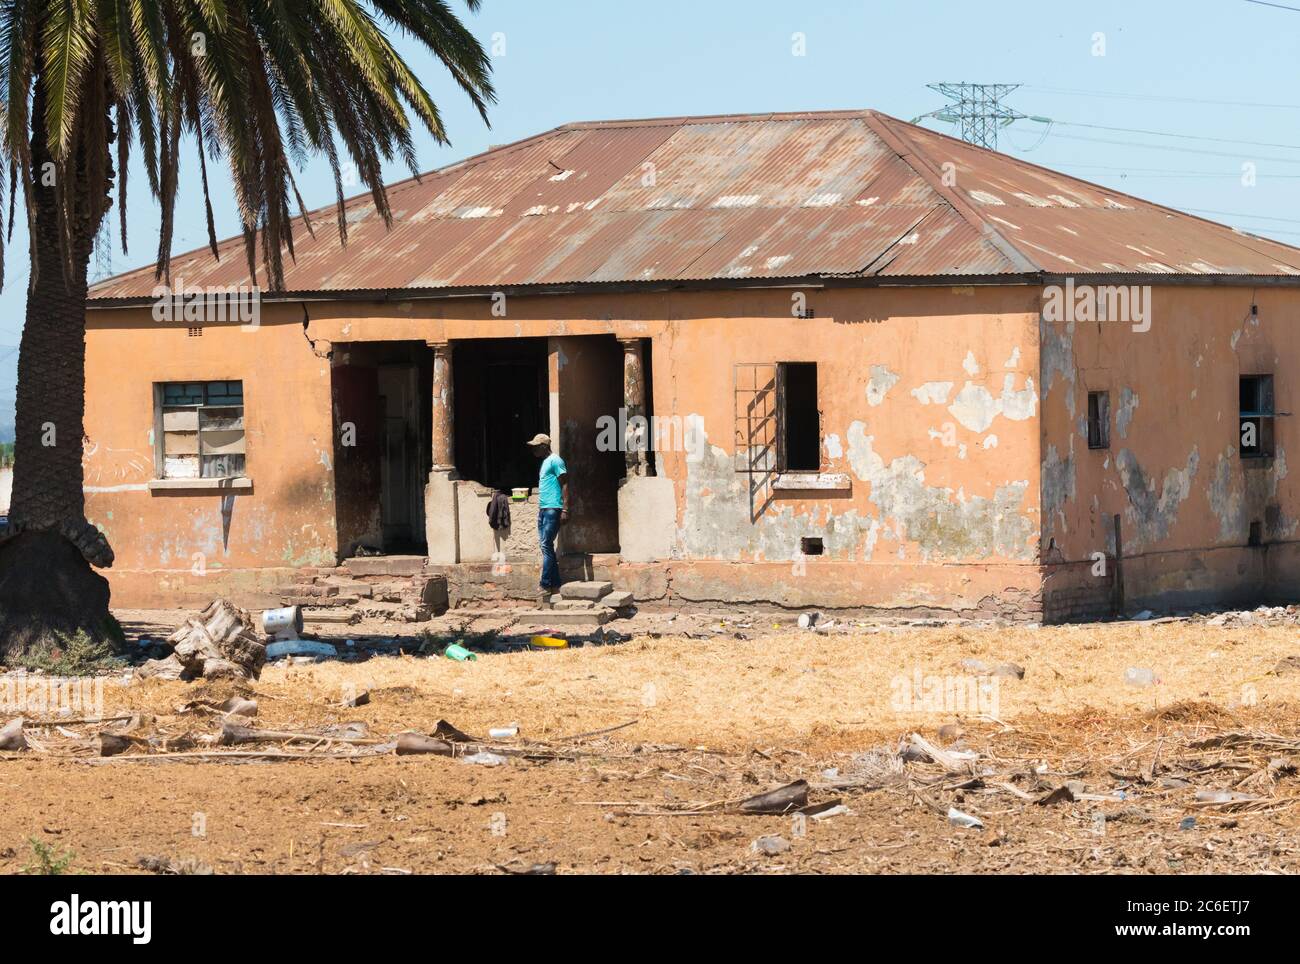 Casa vecchia, decrepita, trascurata con un uomo africano in piedi fuori mostrando povertà e condizioni di vita povere nella città di Città del Capo, Sud Africa Foto Stock